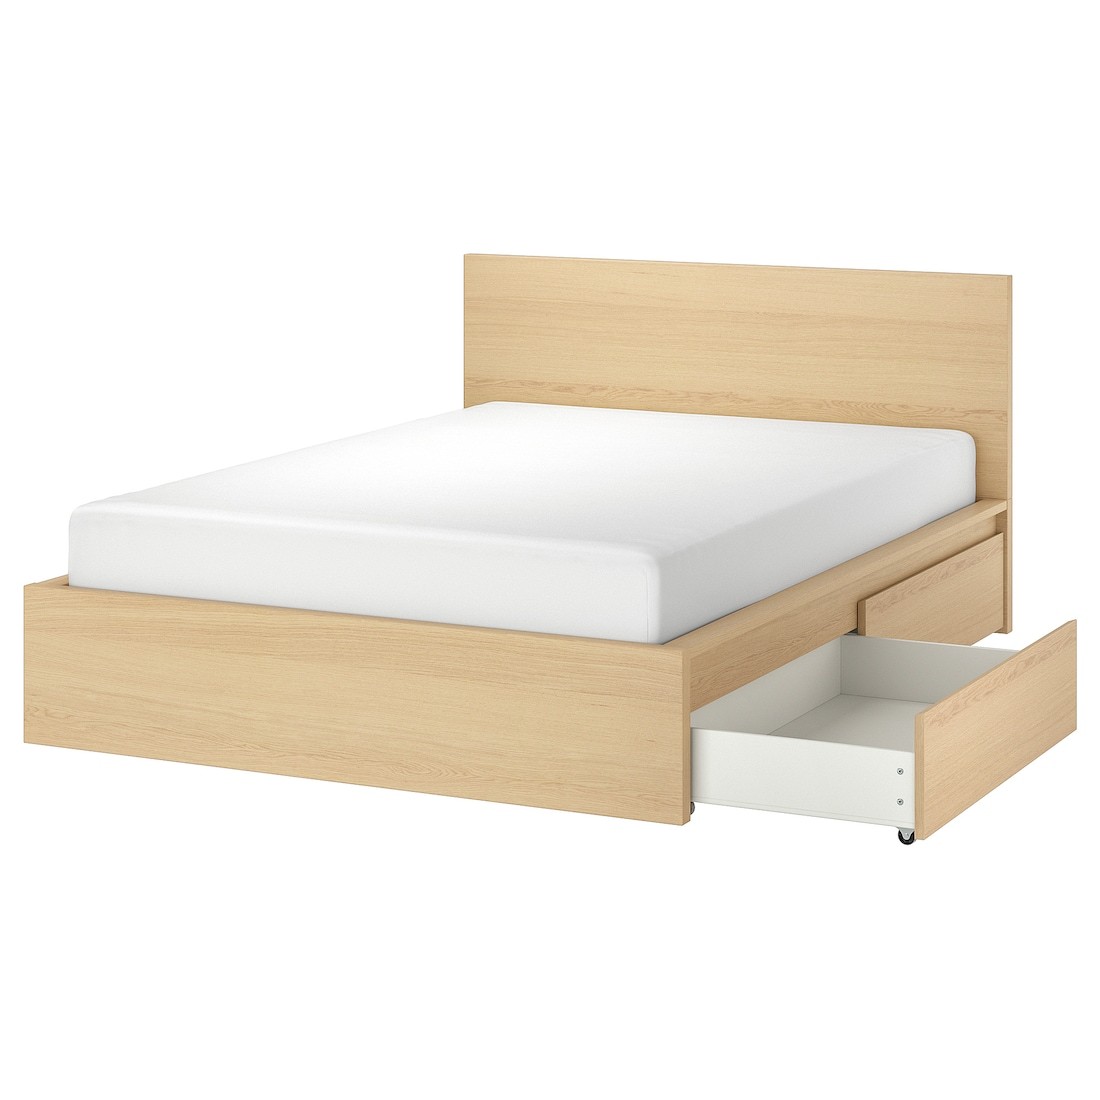 IKEA MALM МАЛЬМ Кровать двуспальная с 2 ящиками, дубовый шпон беленый / Luröy, 180x200 см 29176584 291.765.84